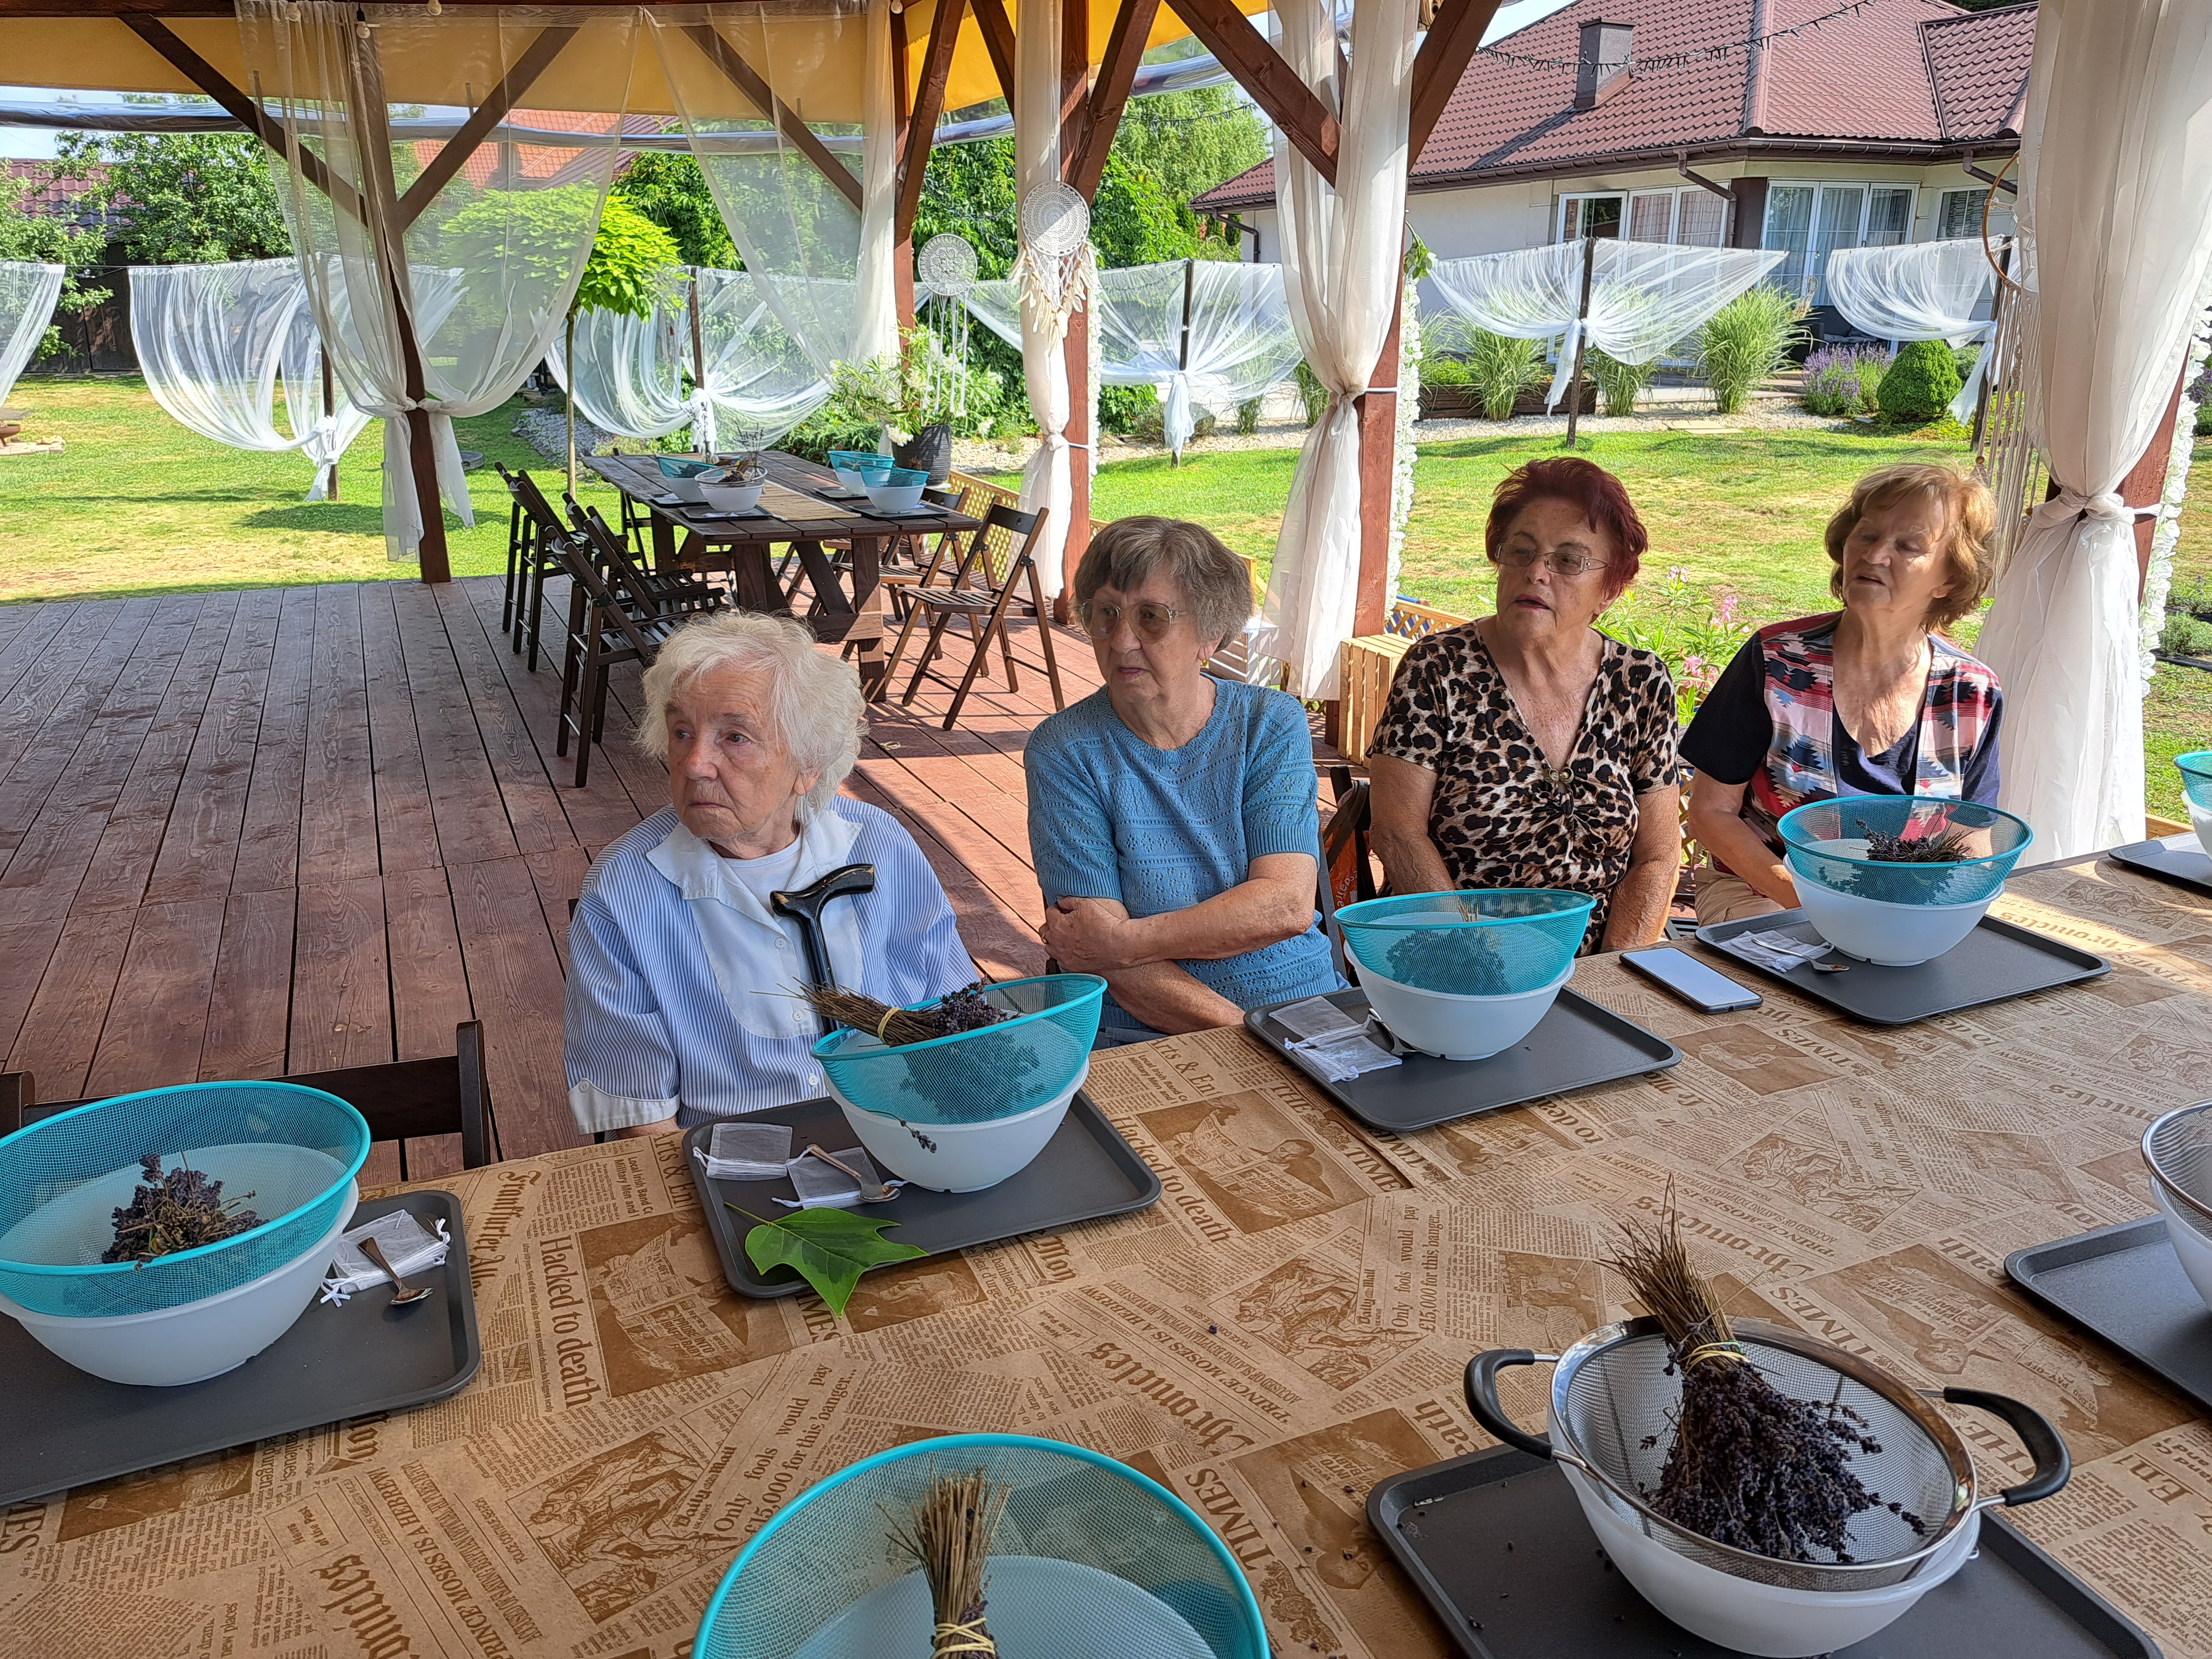 Seniorki siedzą przy stole, przed nimi stoją miski z sitkami, a w ich bukiet lawendy